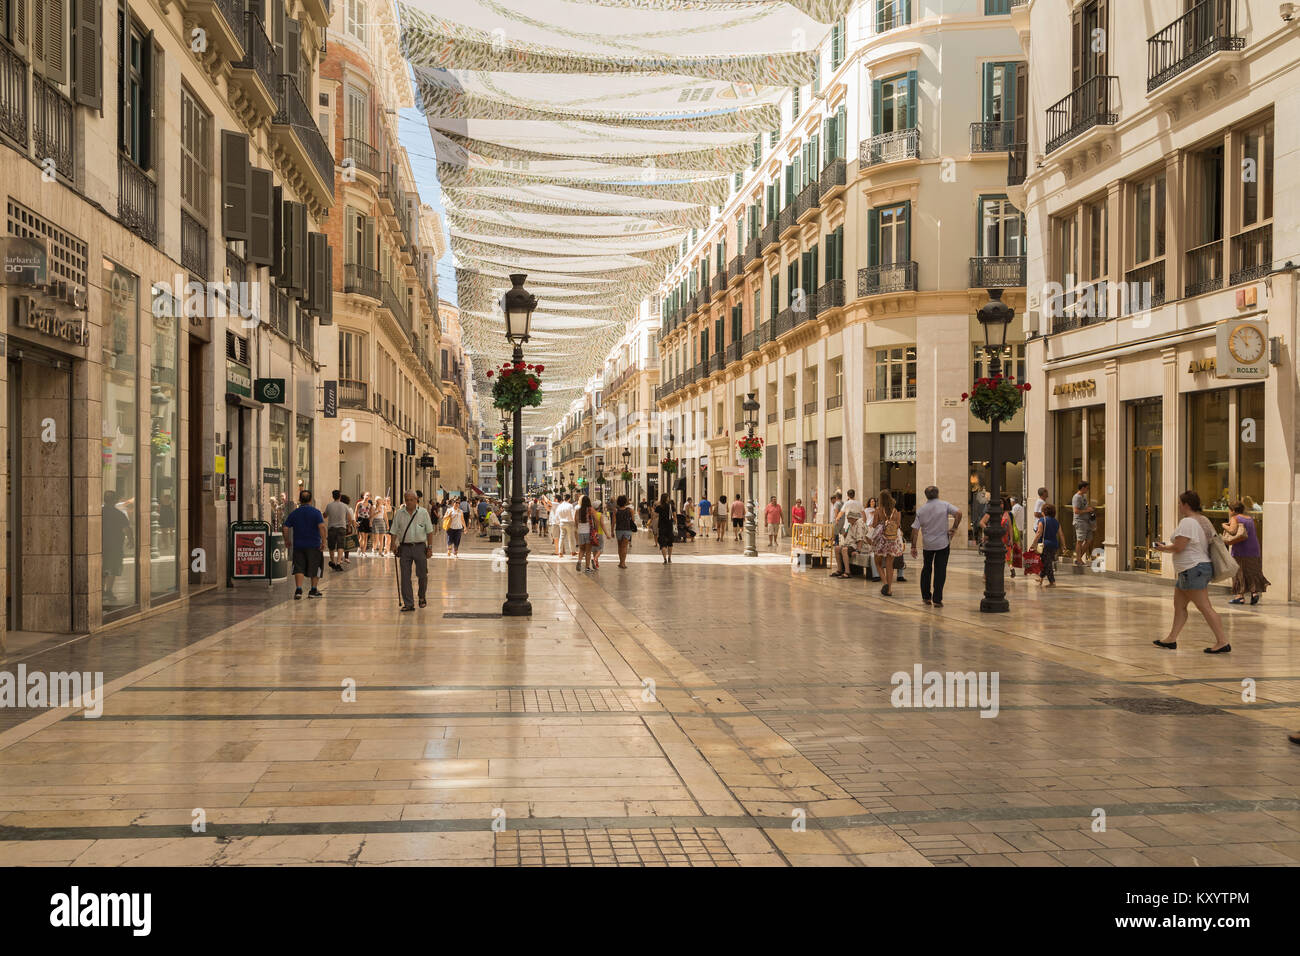 Une image de l'une des principales rues commerçantes de Malaga, Espagne. Calle Larios offre plusieurs types de magasins pour les habitants et les touristes. Calle La Banque D'Images